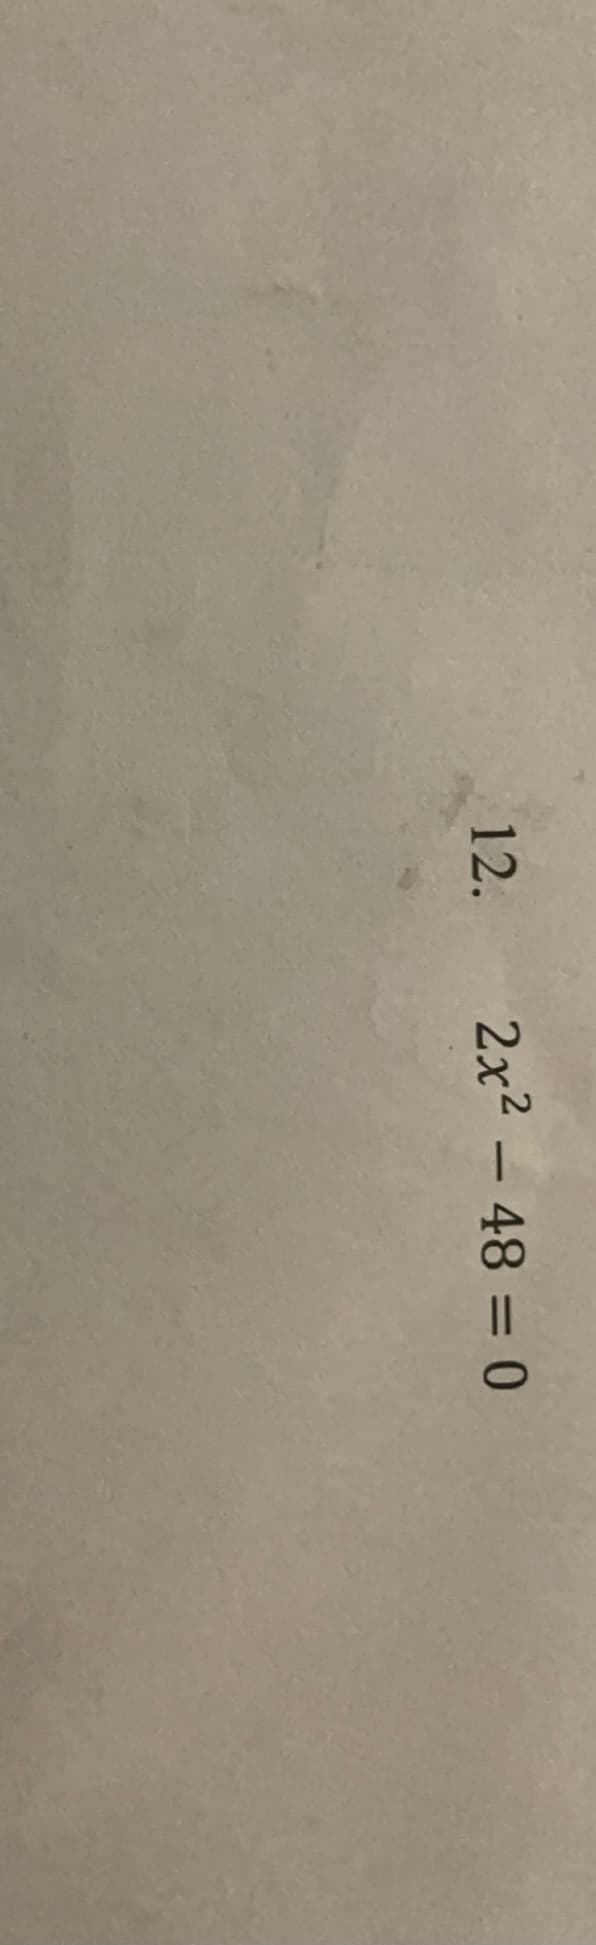 12.
2x2 - 48 = 0
